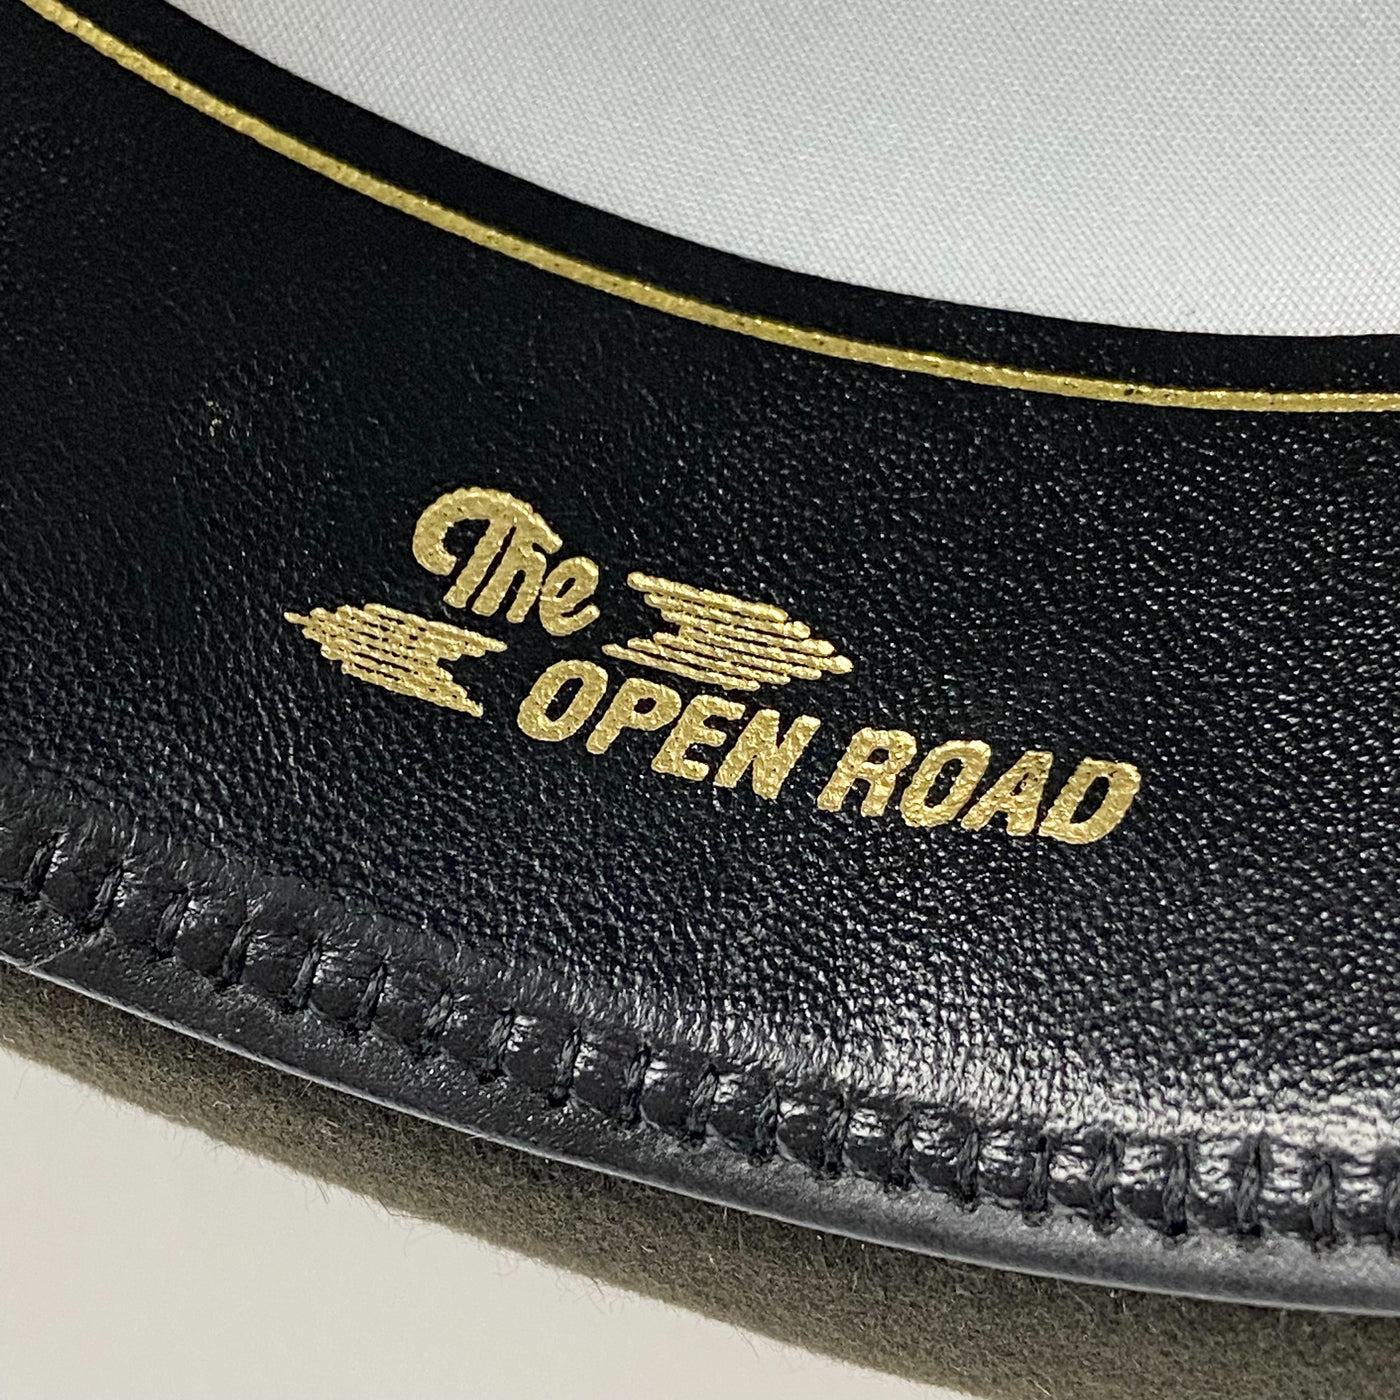 【新品】Royal Open Road JP 59cm (7 3/8)